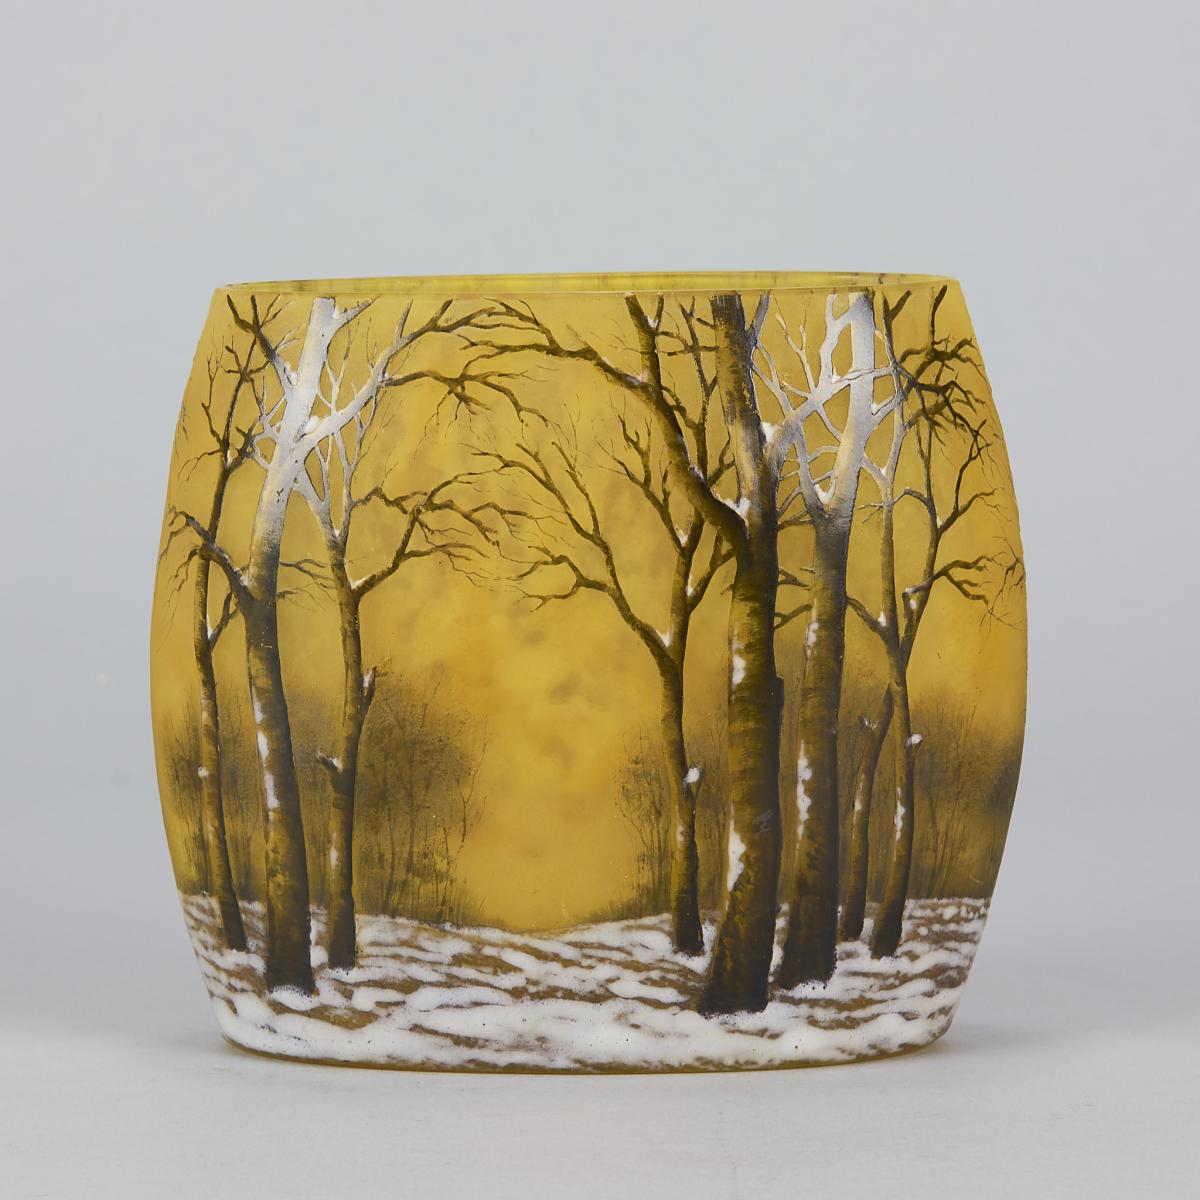 Winter Landscape Pillow Vase entitled "Paysage d’Hiver" by Daum Frères